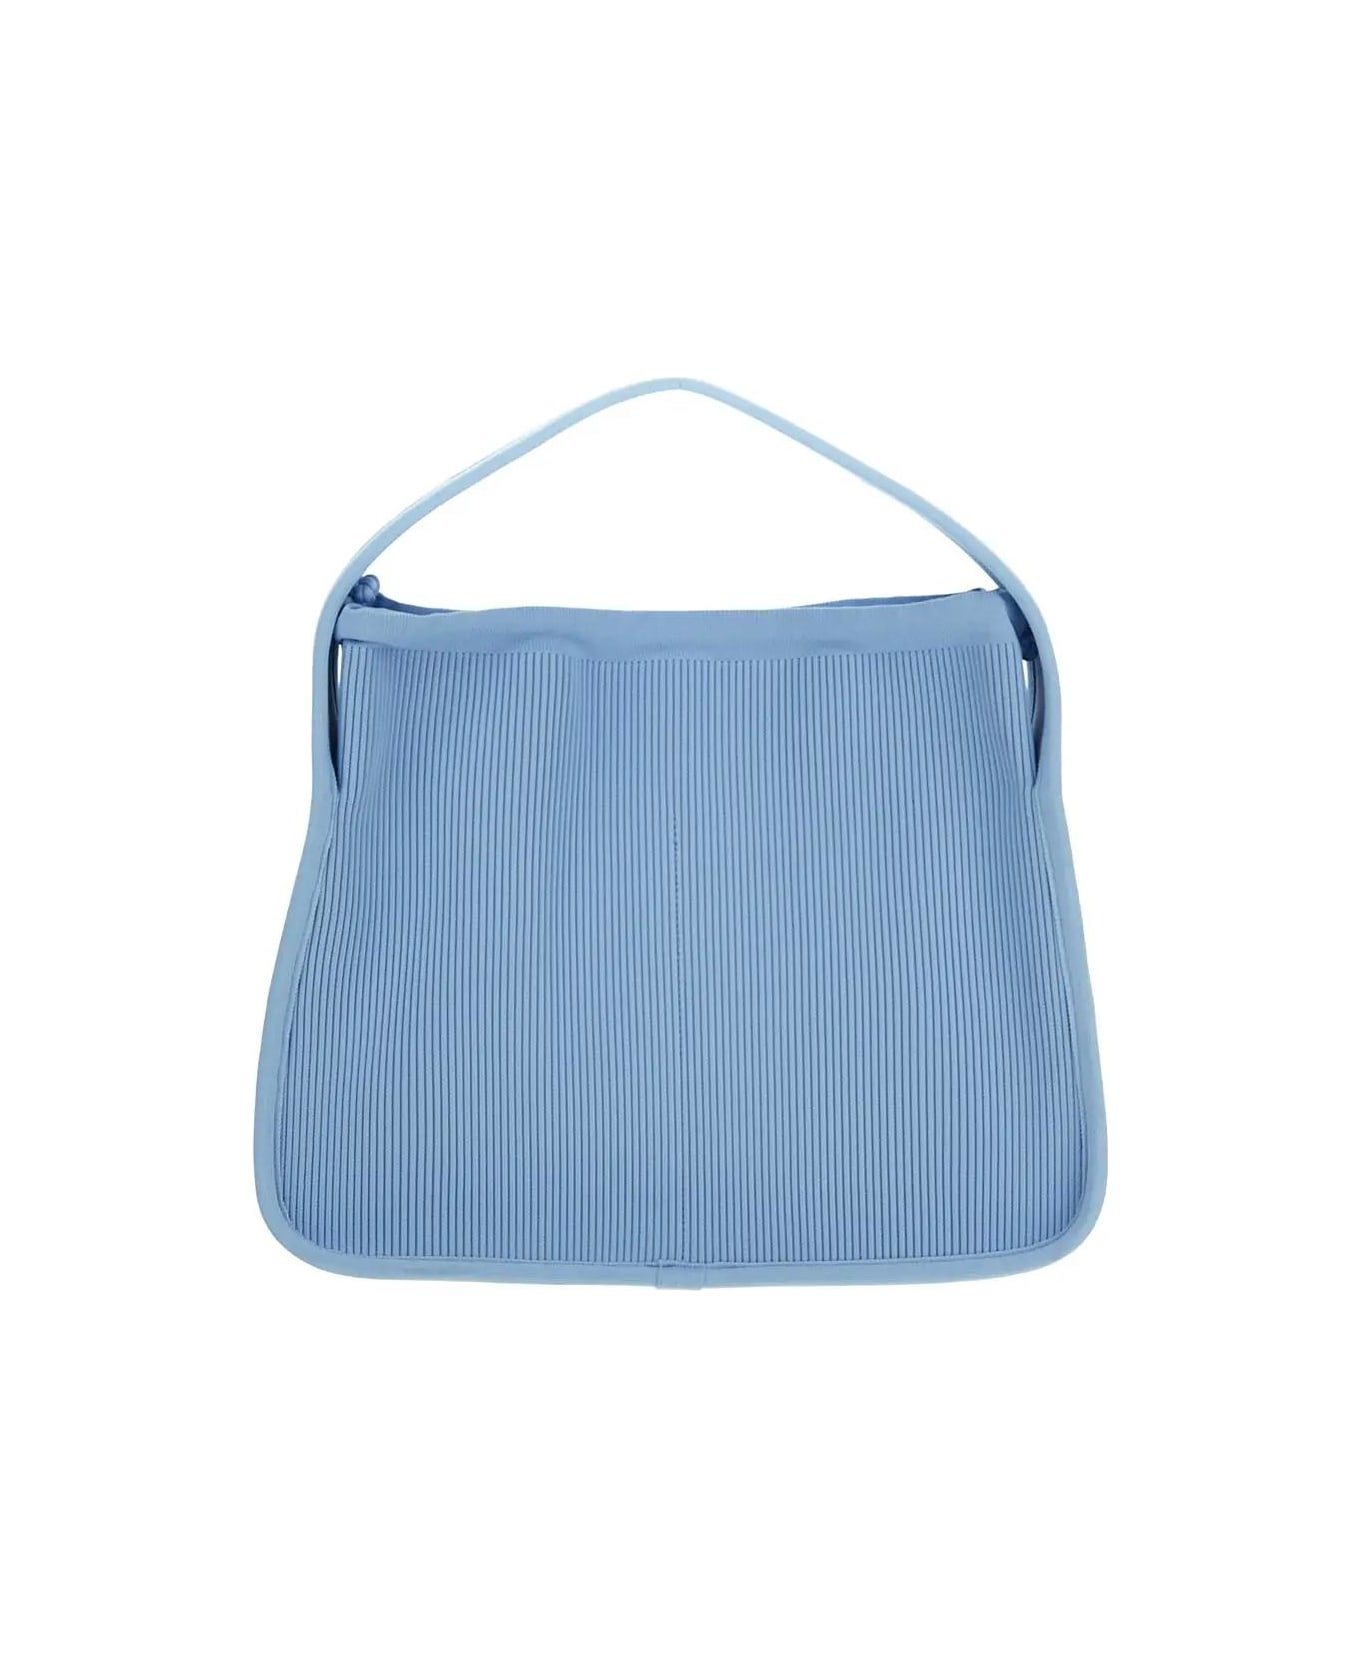 Alexander Wang Ryan Large Bag - Chambray Blue